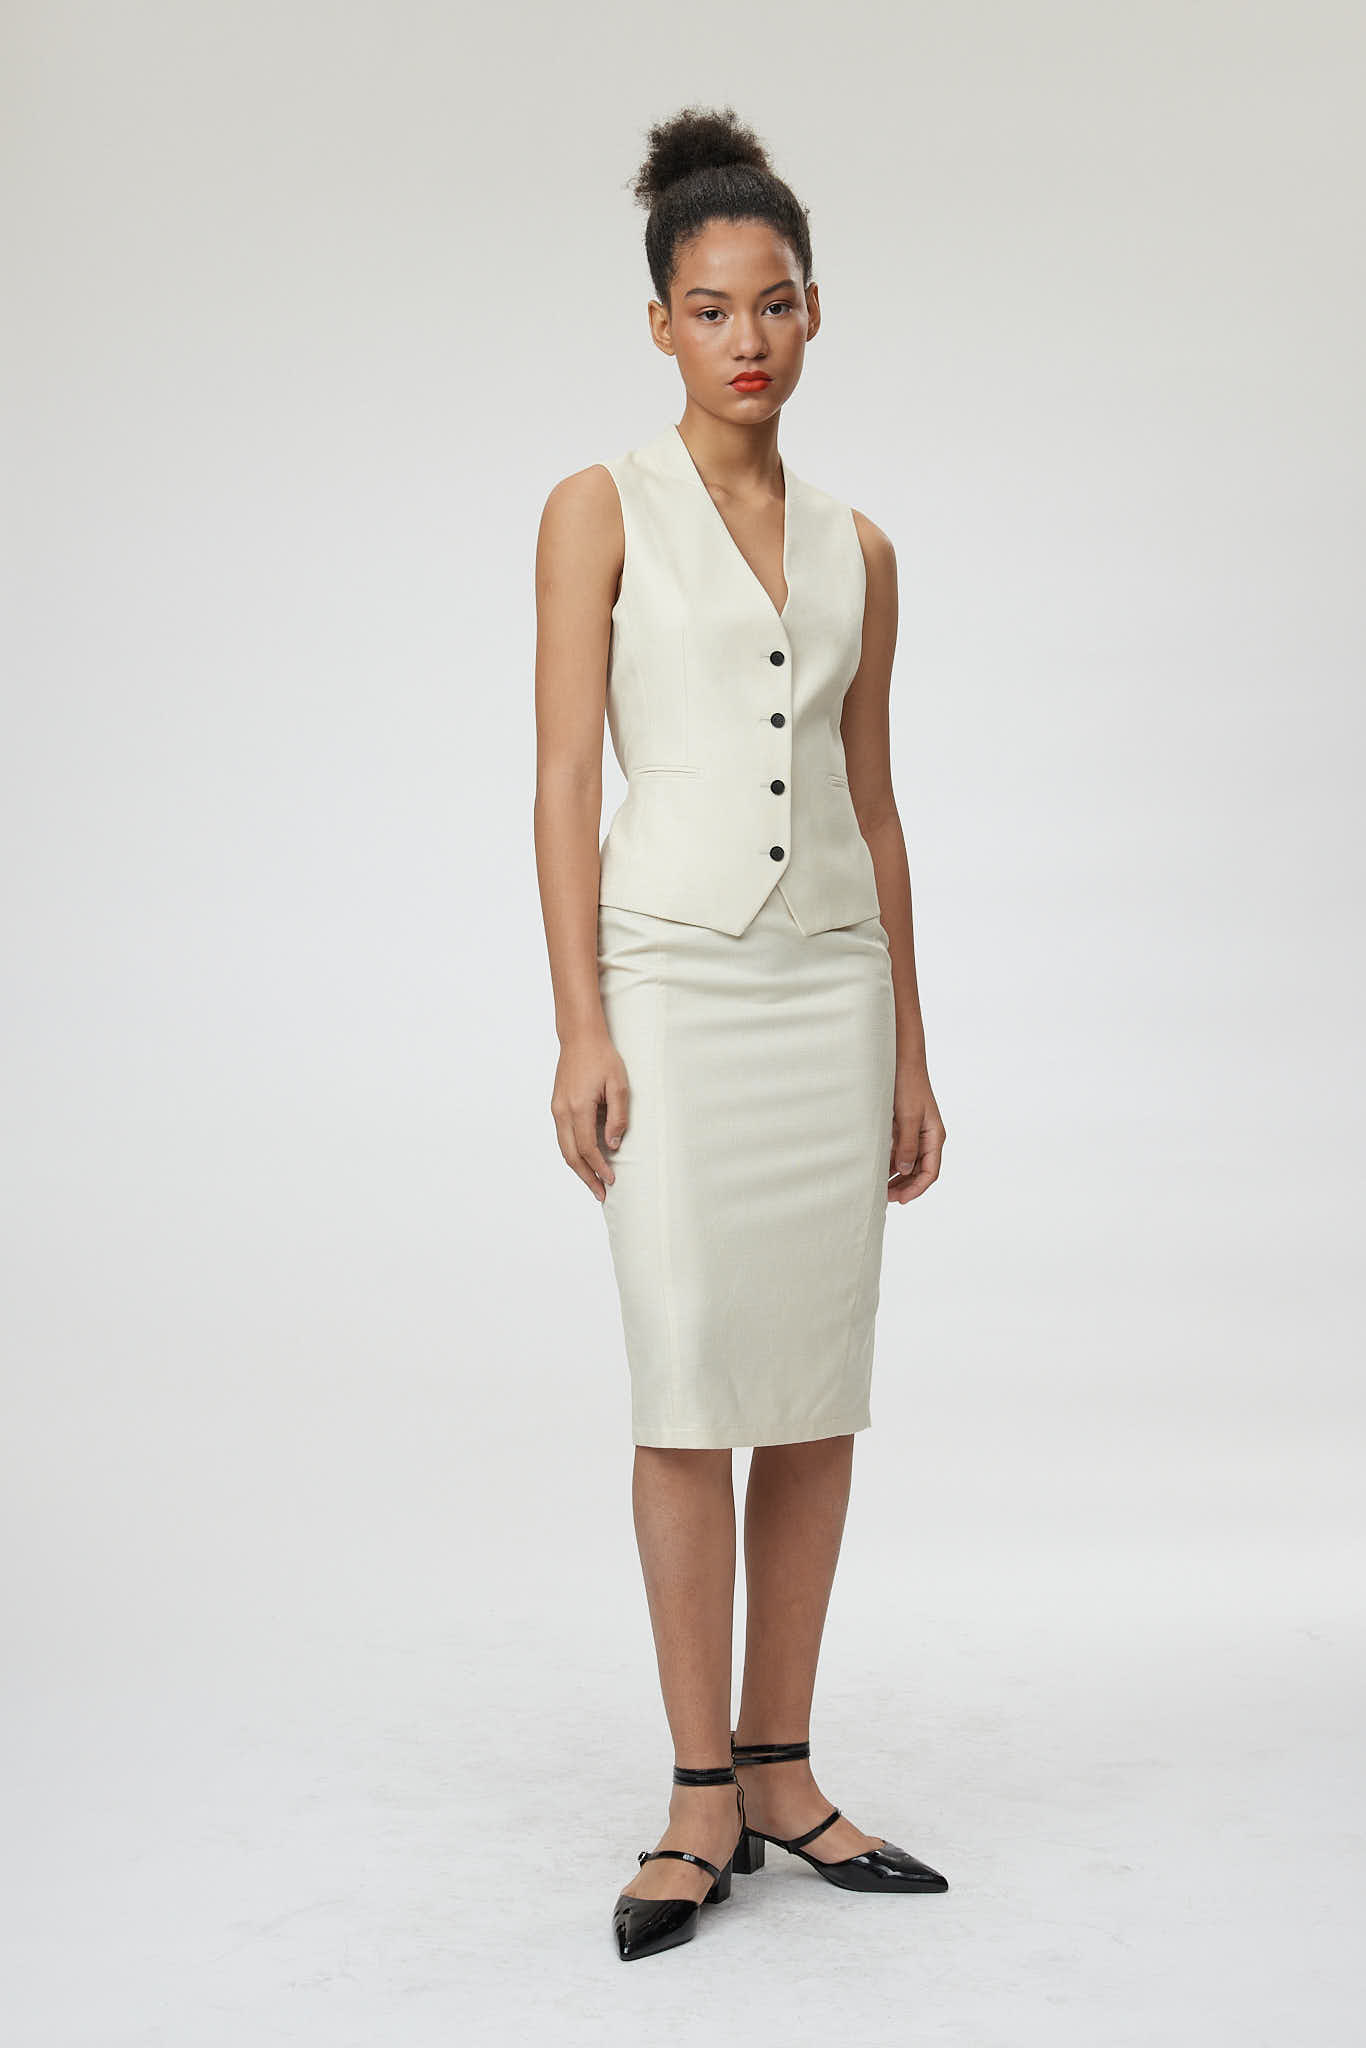 Ferrara Waistcoat – Classic waistcoat in off-white